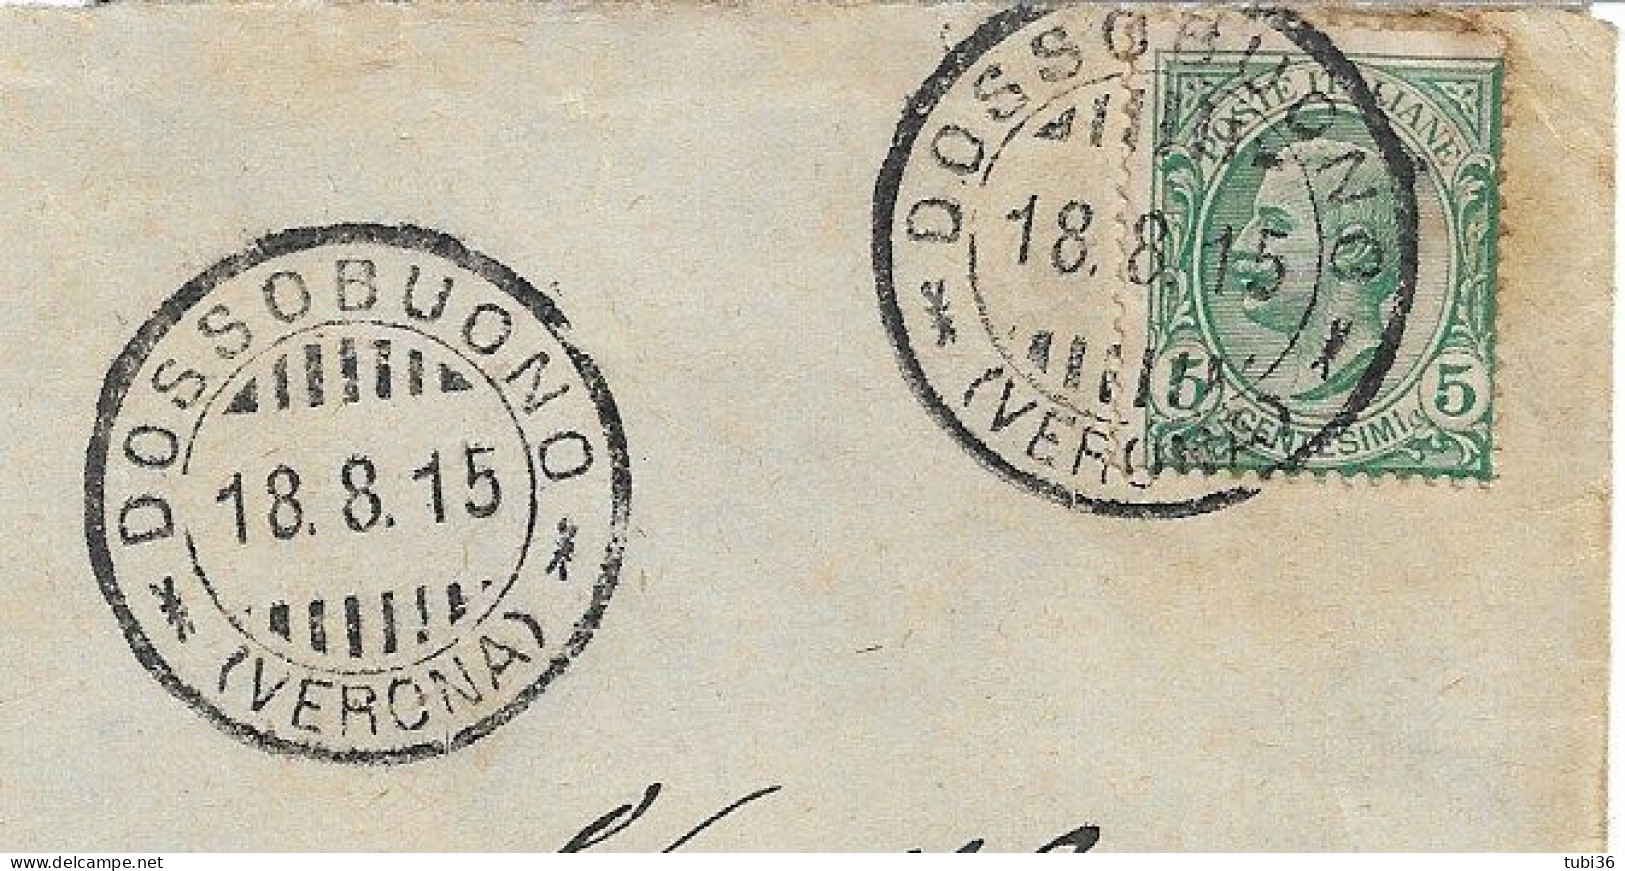 LEONI Cent.5 (s81),isolato Tariffa DISTRETTO,1915,TIMBRO POSTE DOSSOBUONO (VERONA) - Storia Postale